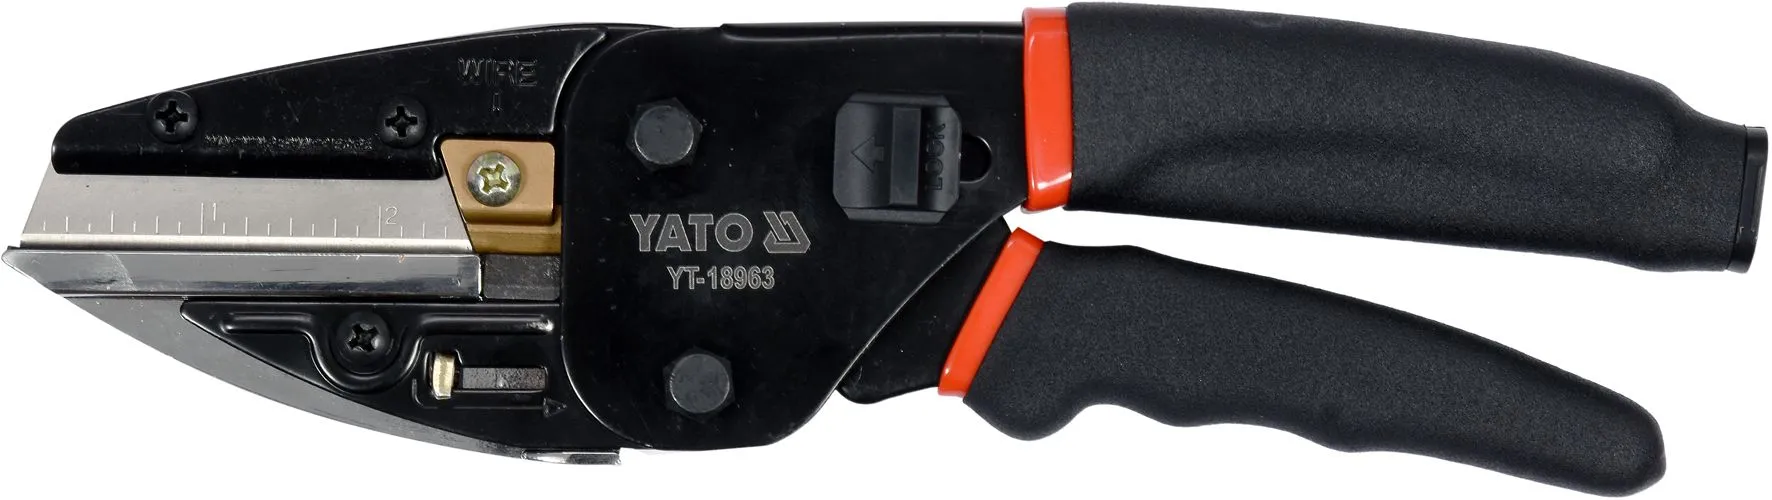 Ножницы технические многофункциональные Yato YT-18963